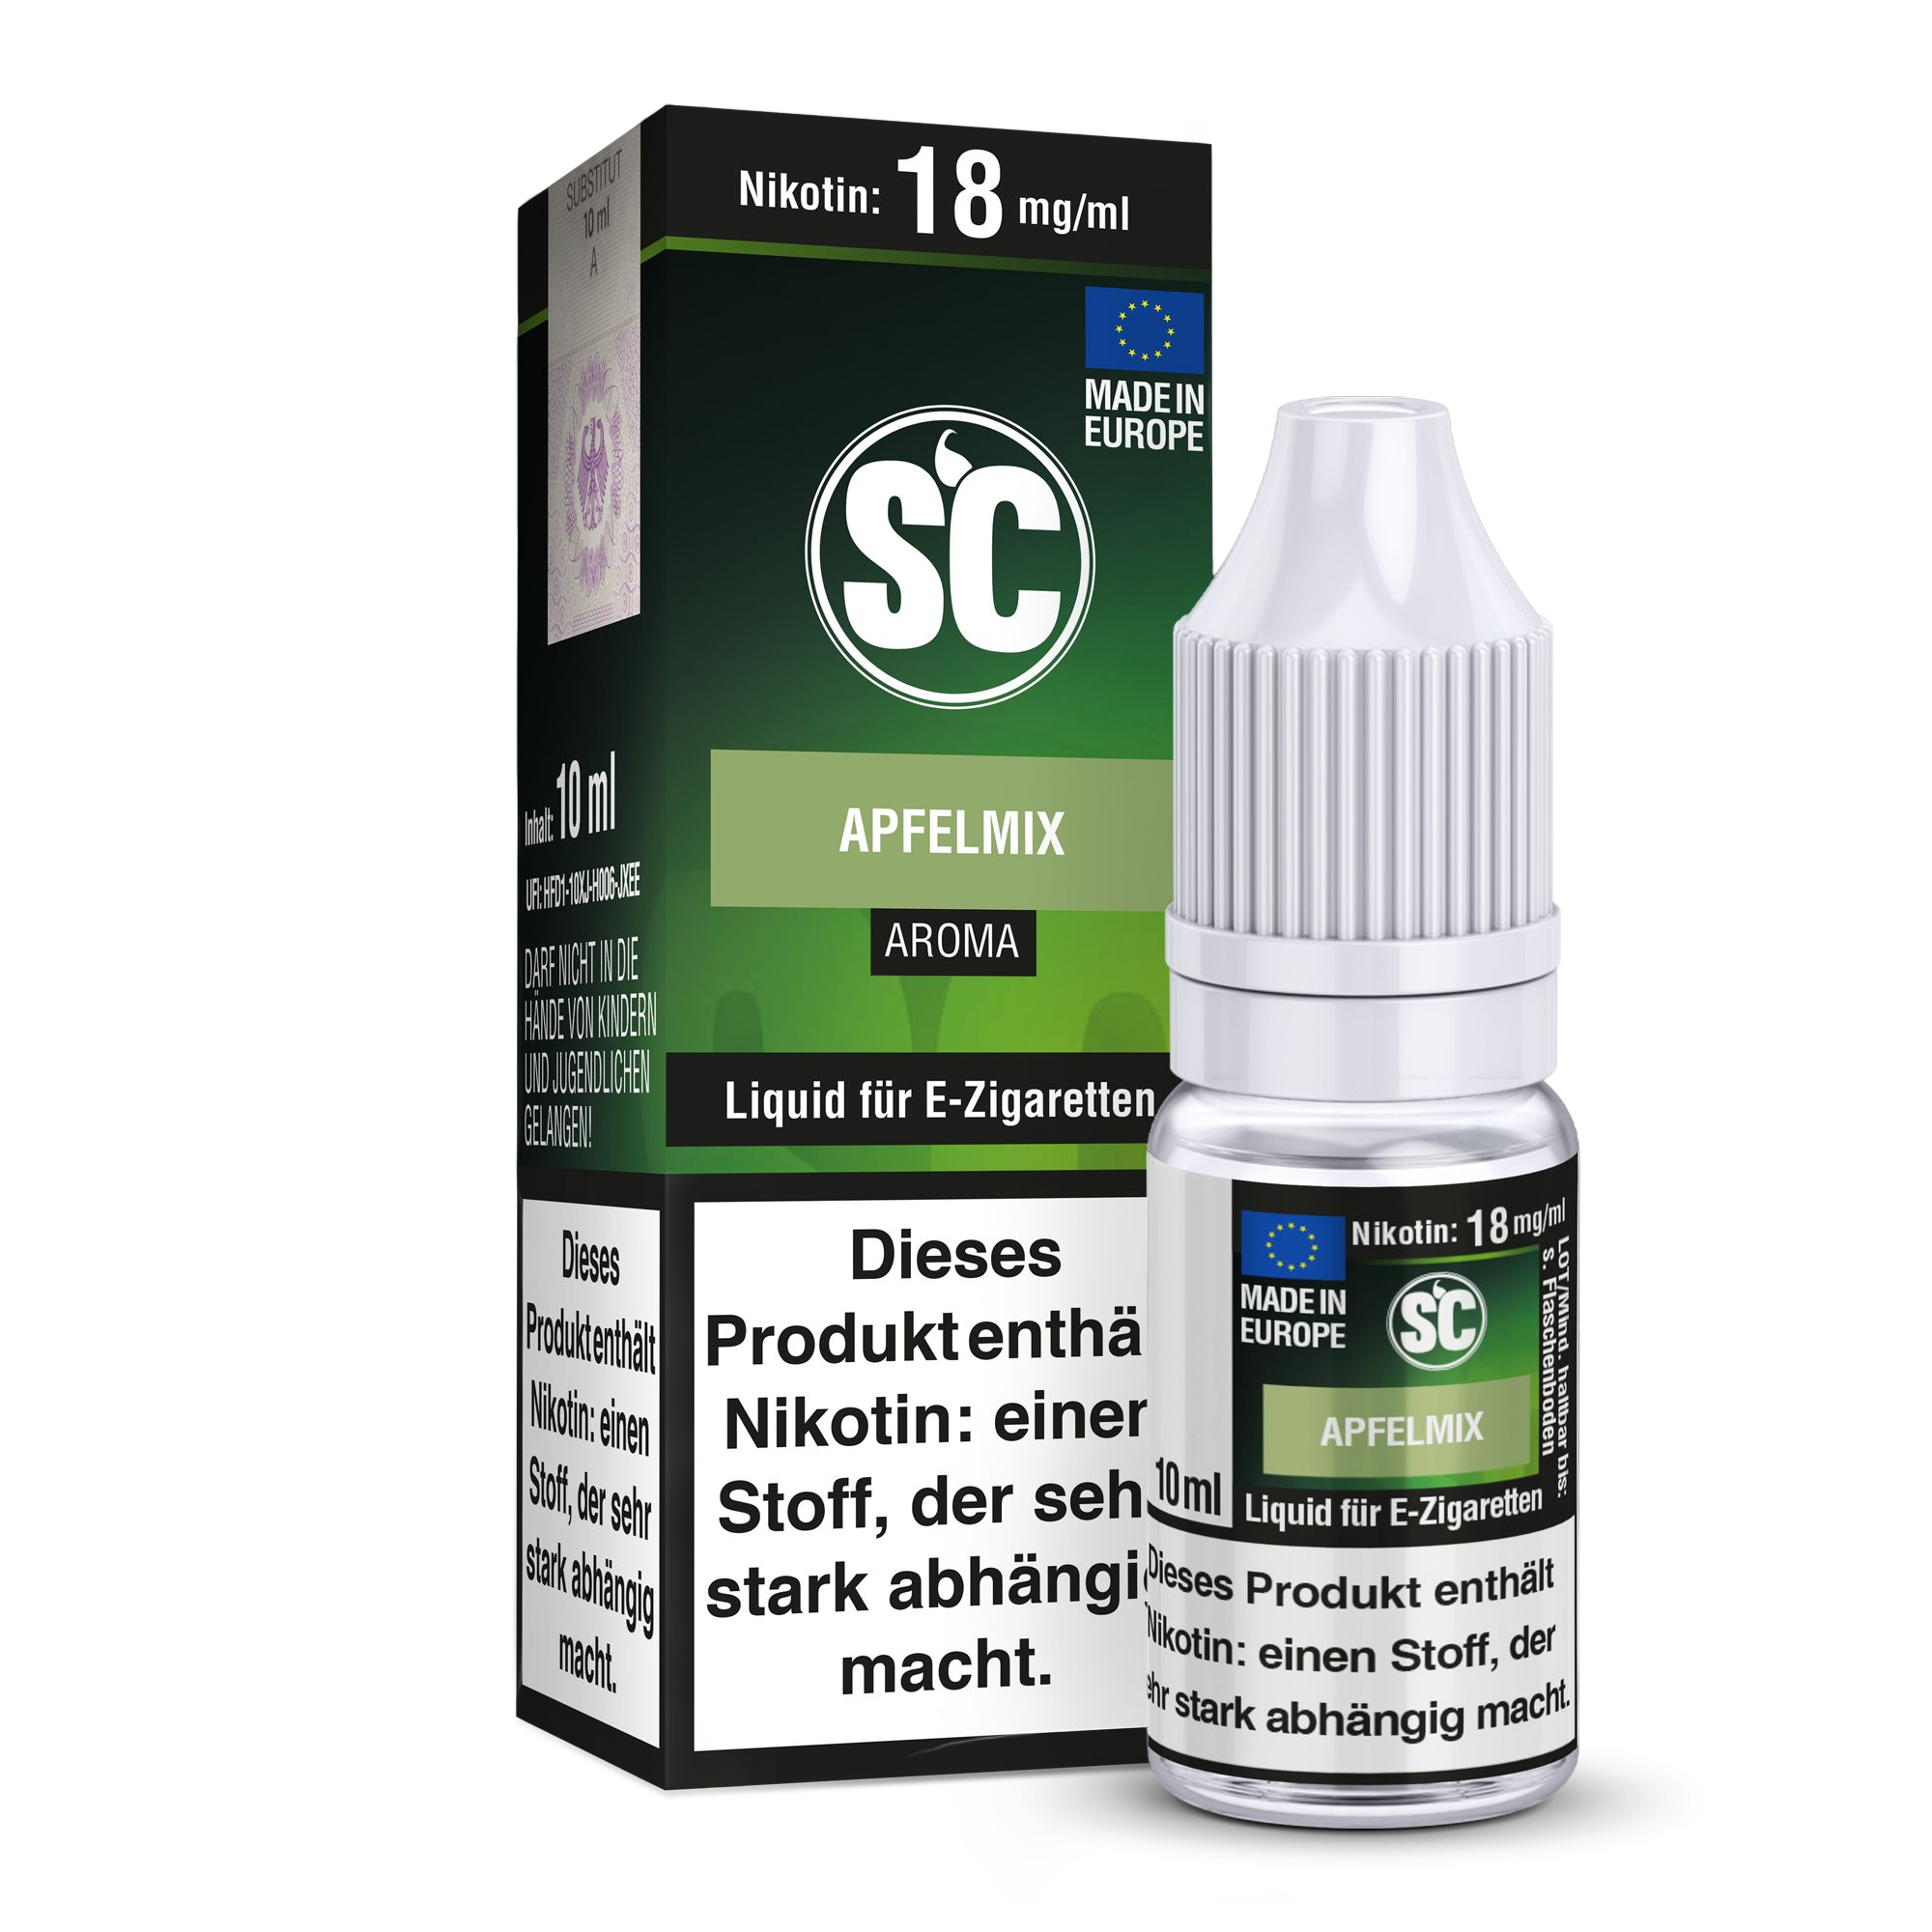 SC - Apfelmix Liquid 3 mg/ml